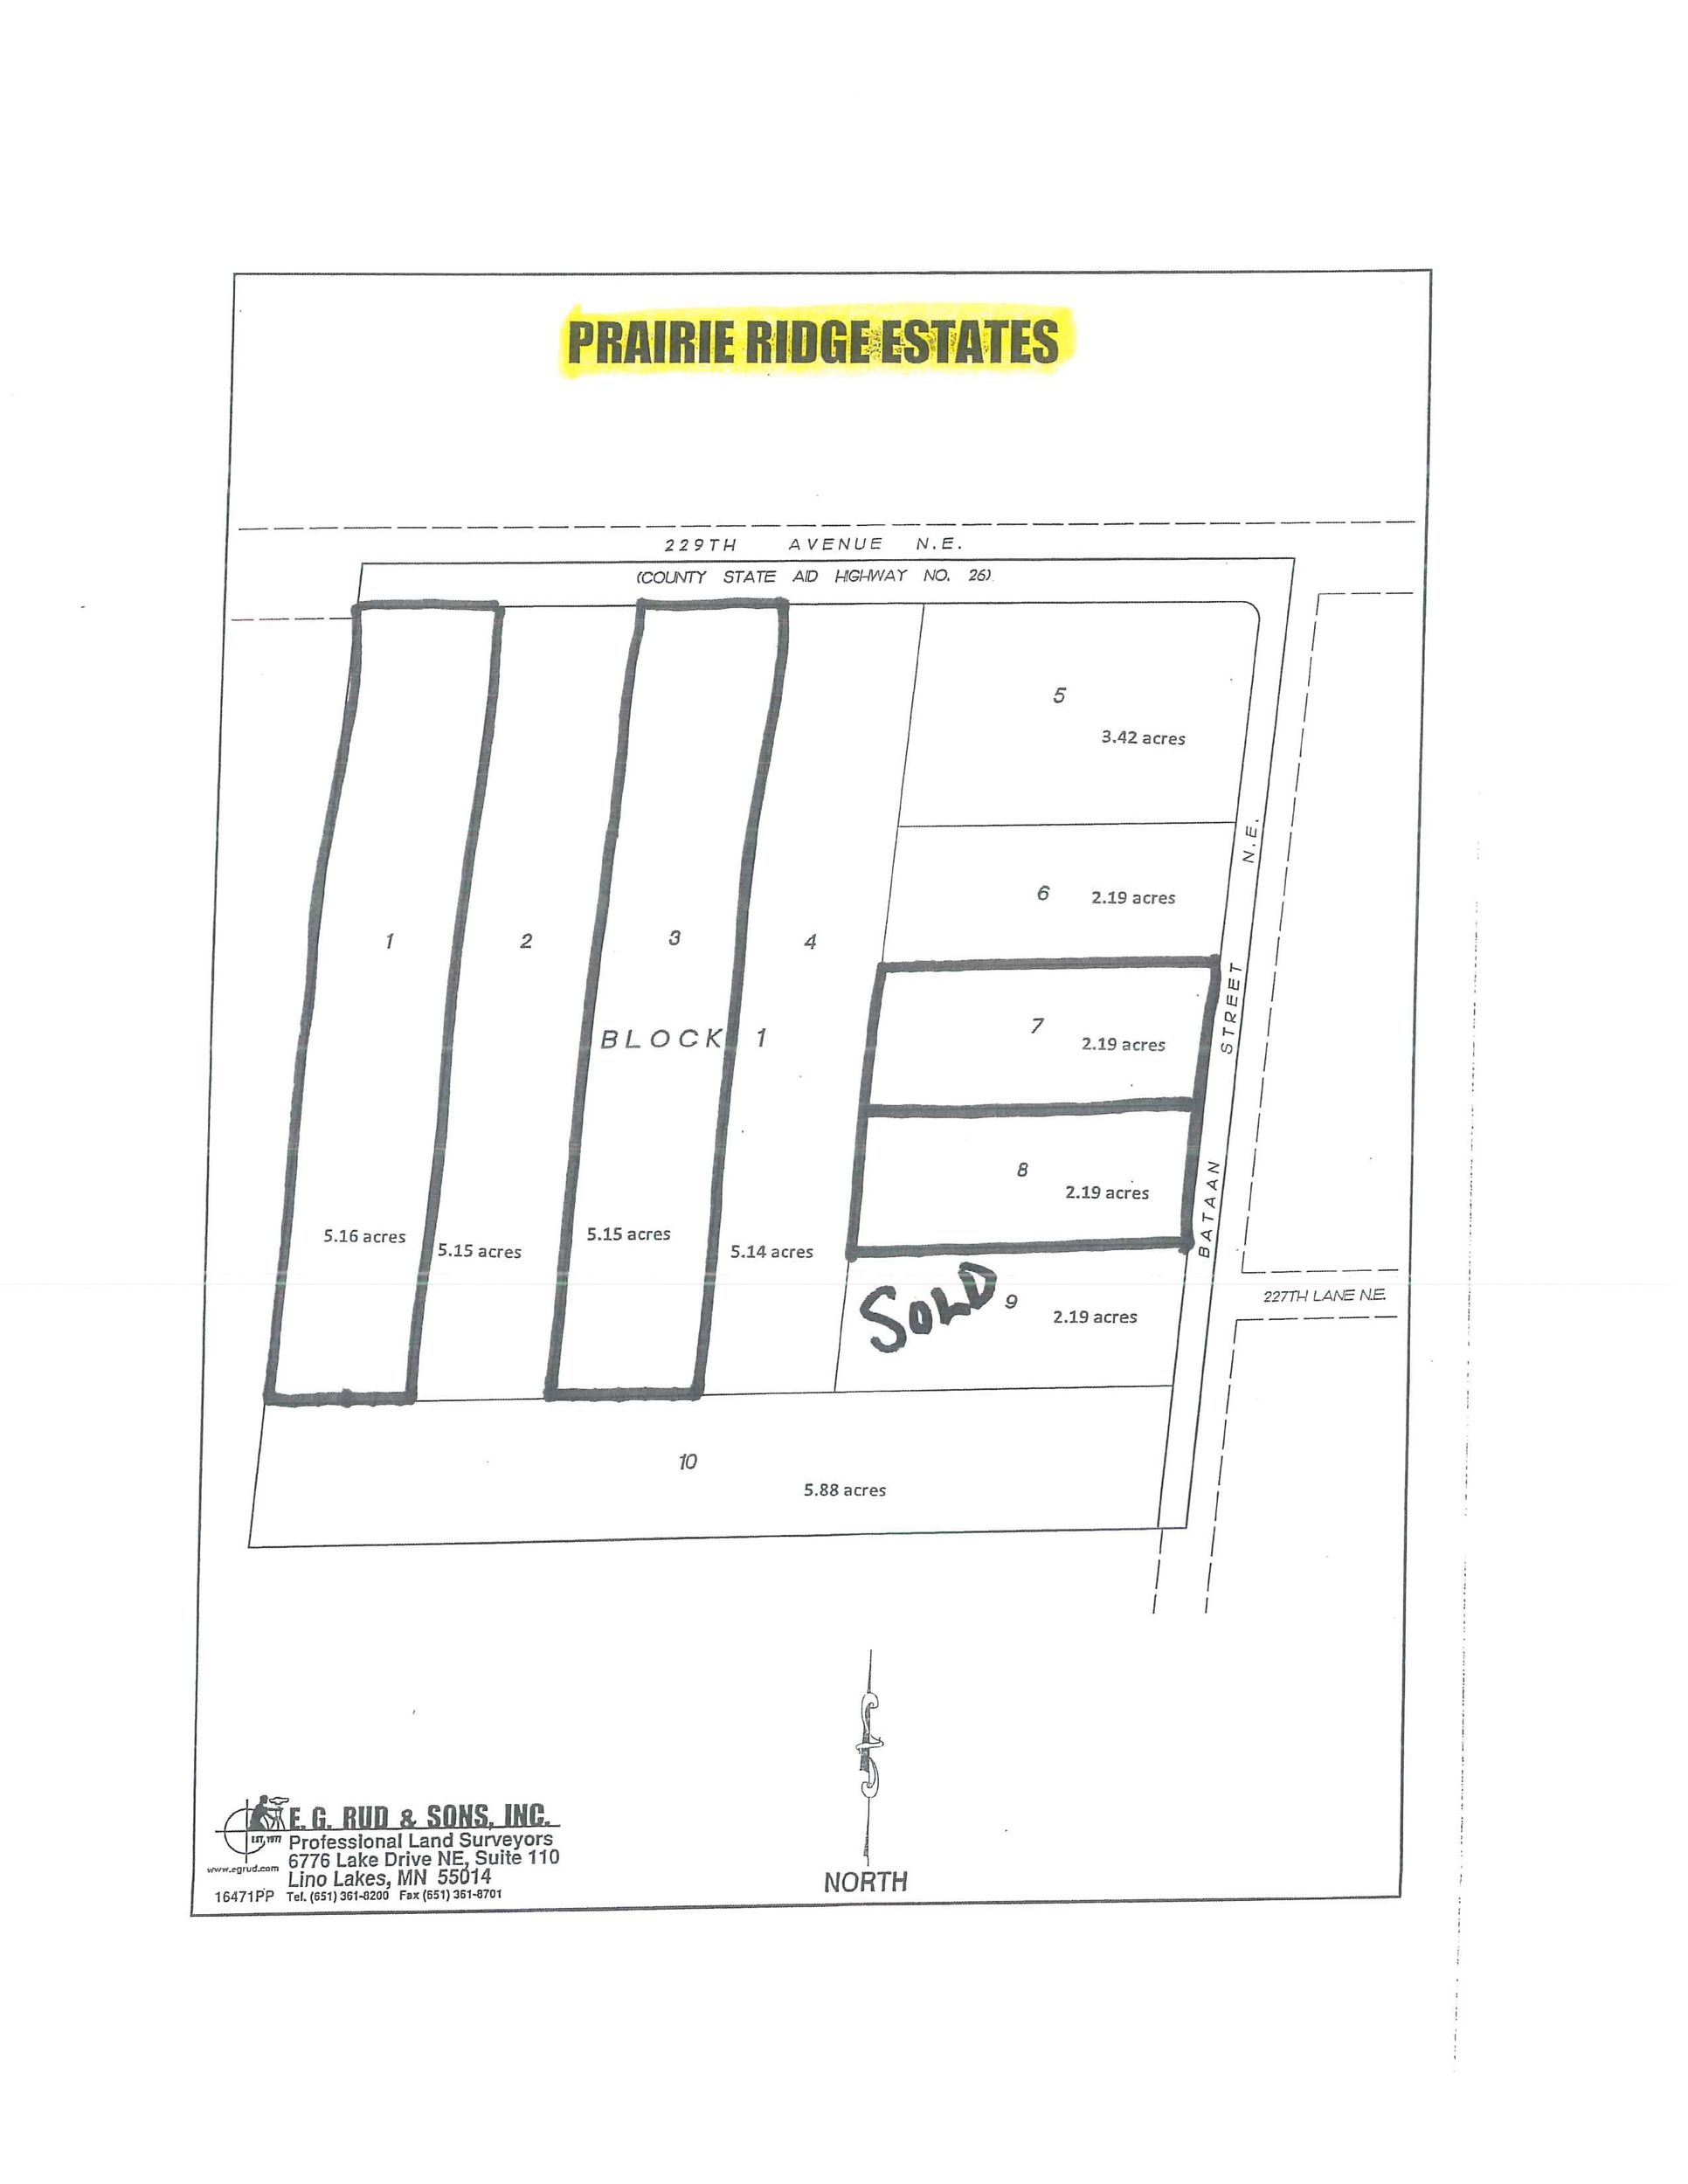 Prairie Ridge Estates,55011